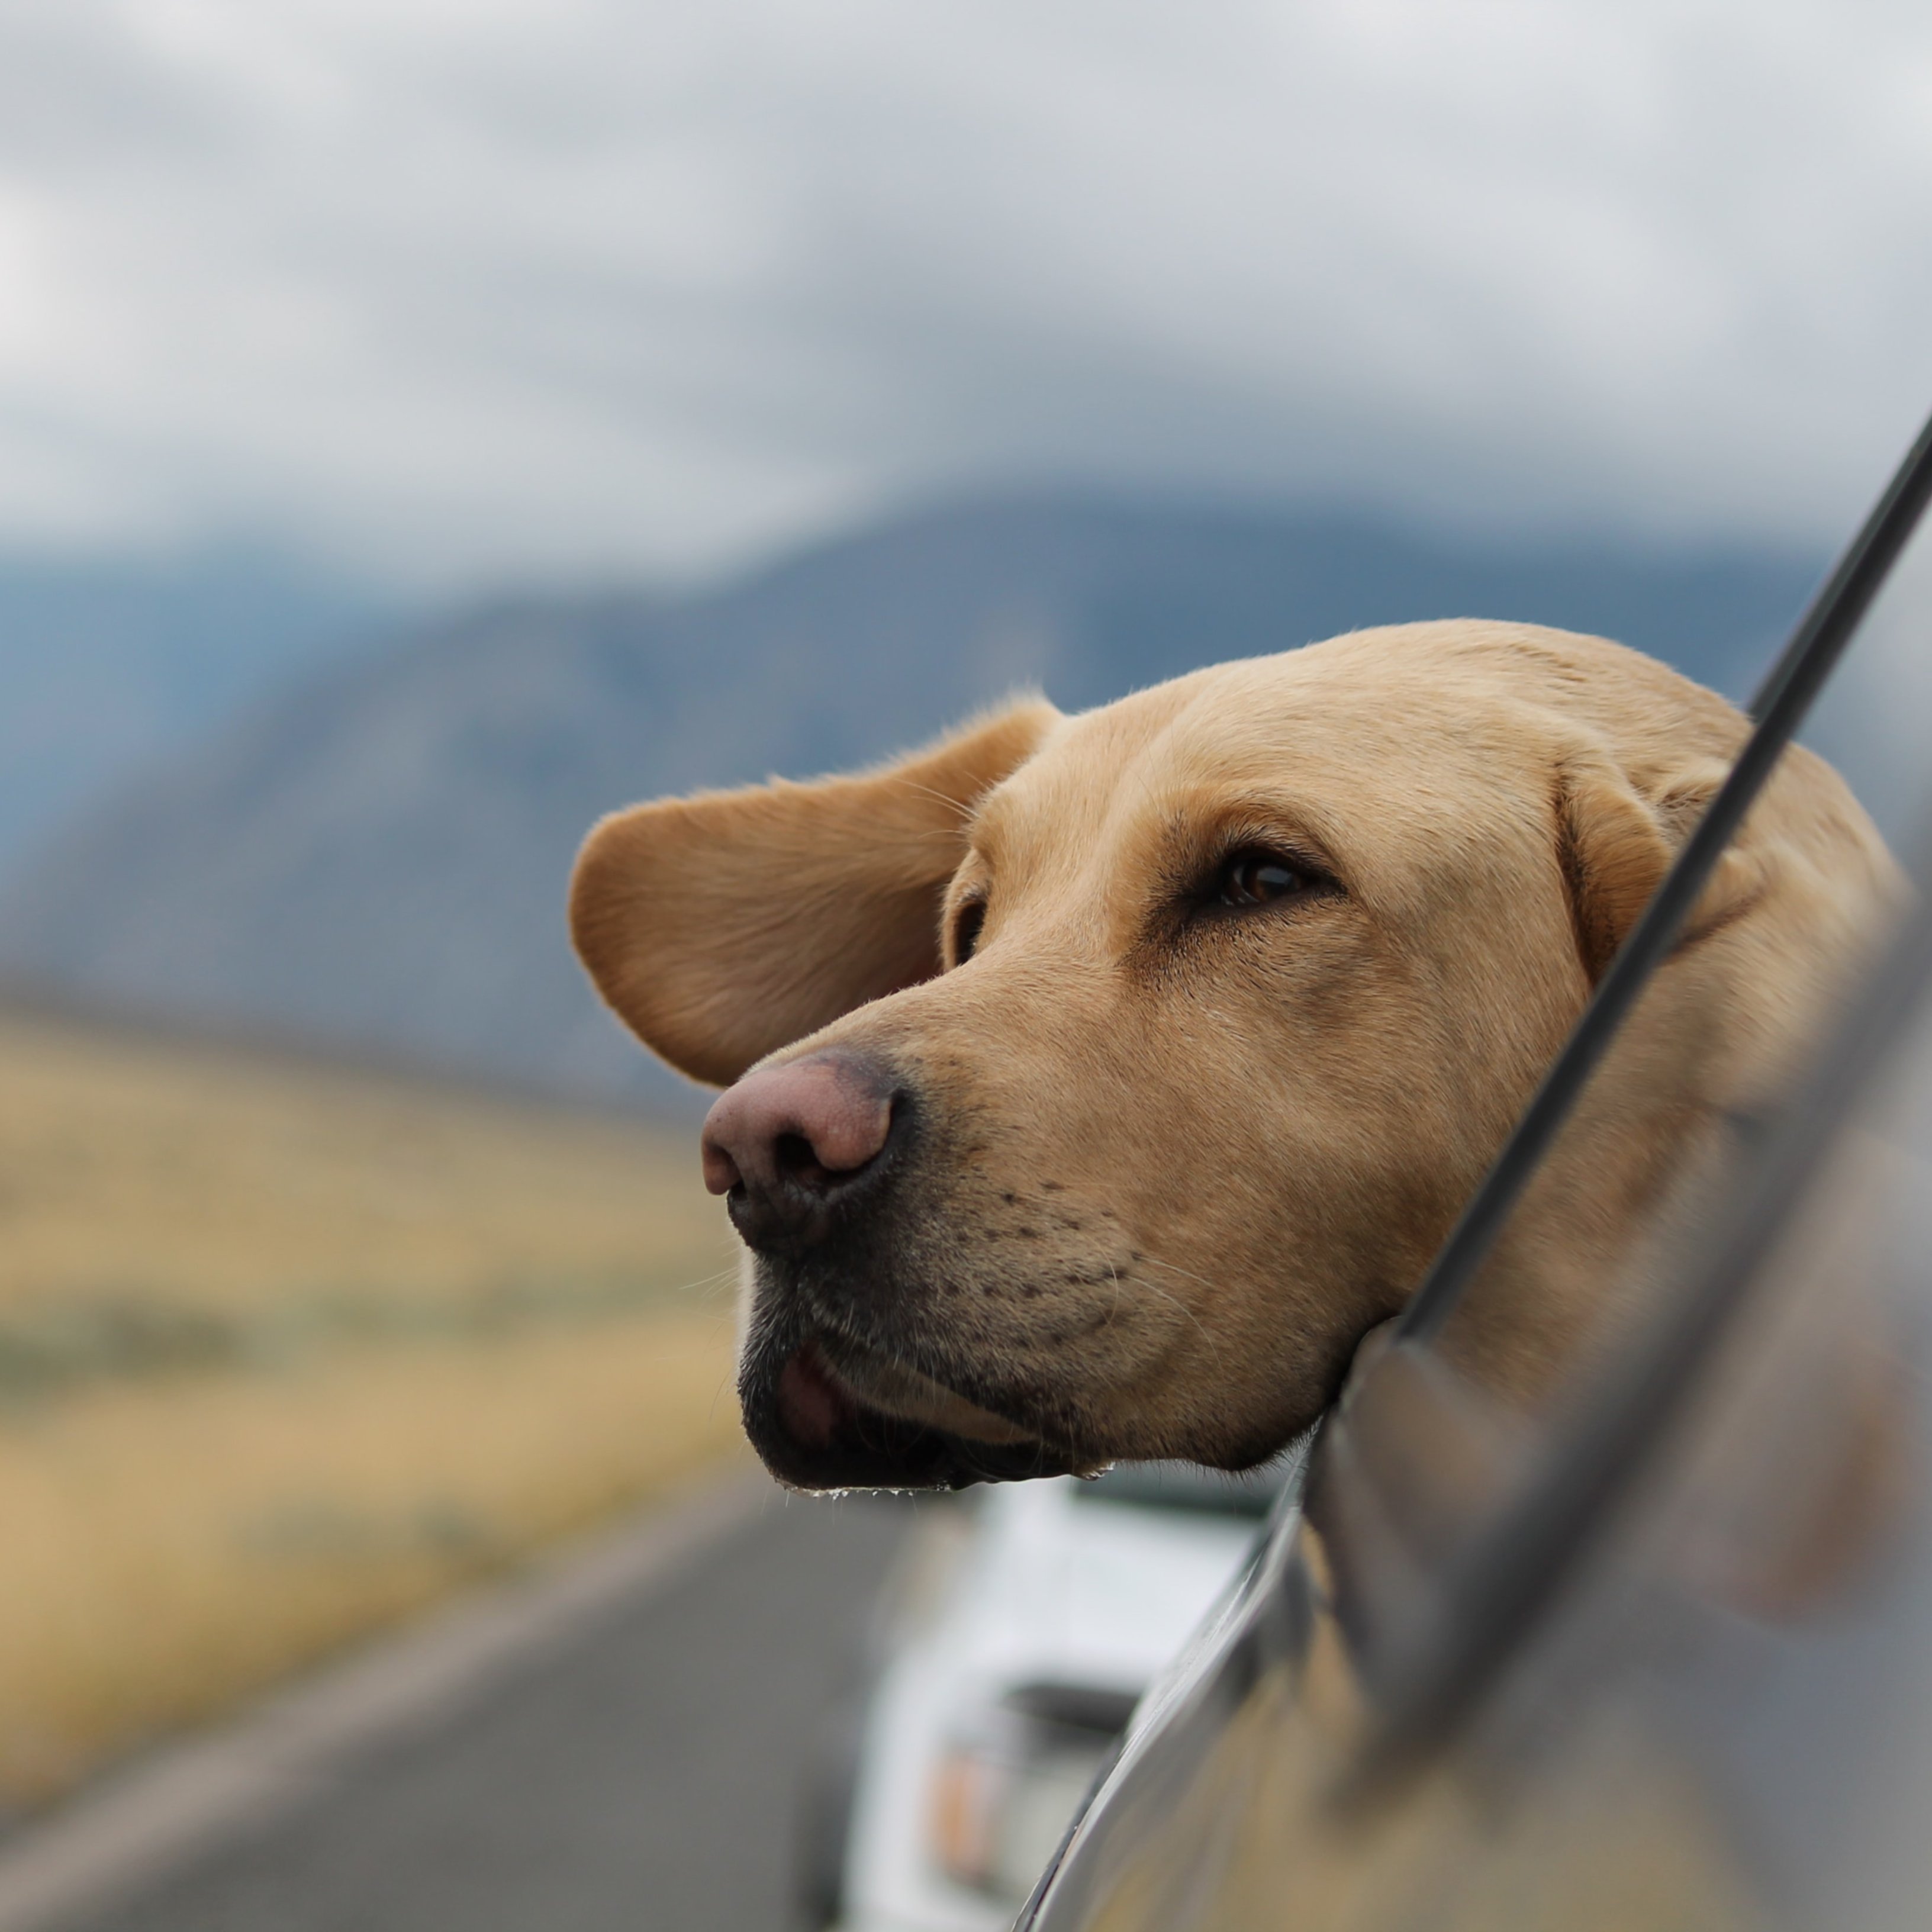 La DGT multa a los conductores que dejan a su mascota sola en el coche, ni 5 minutos